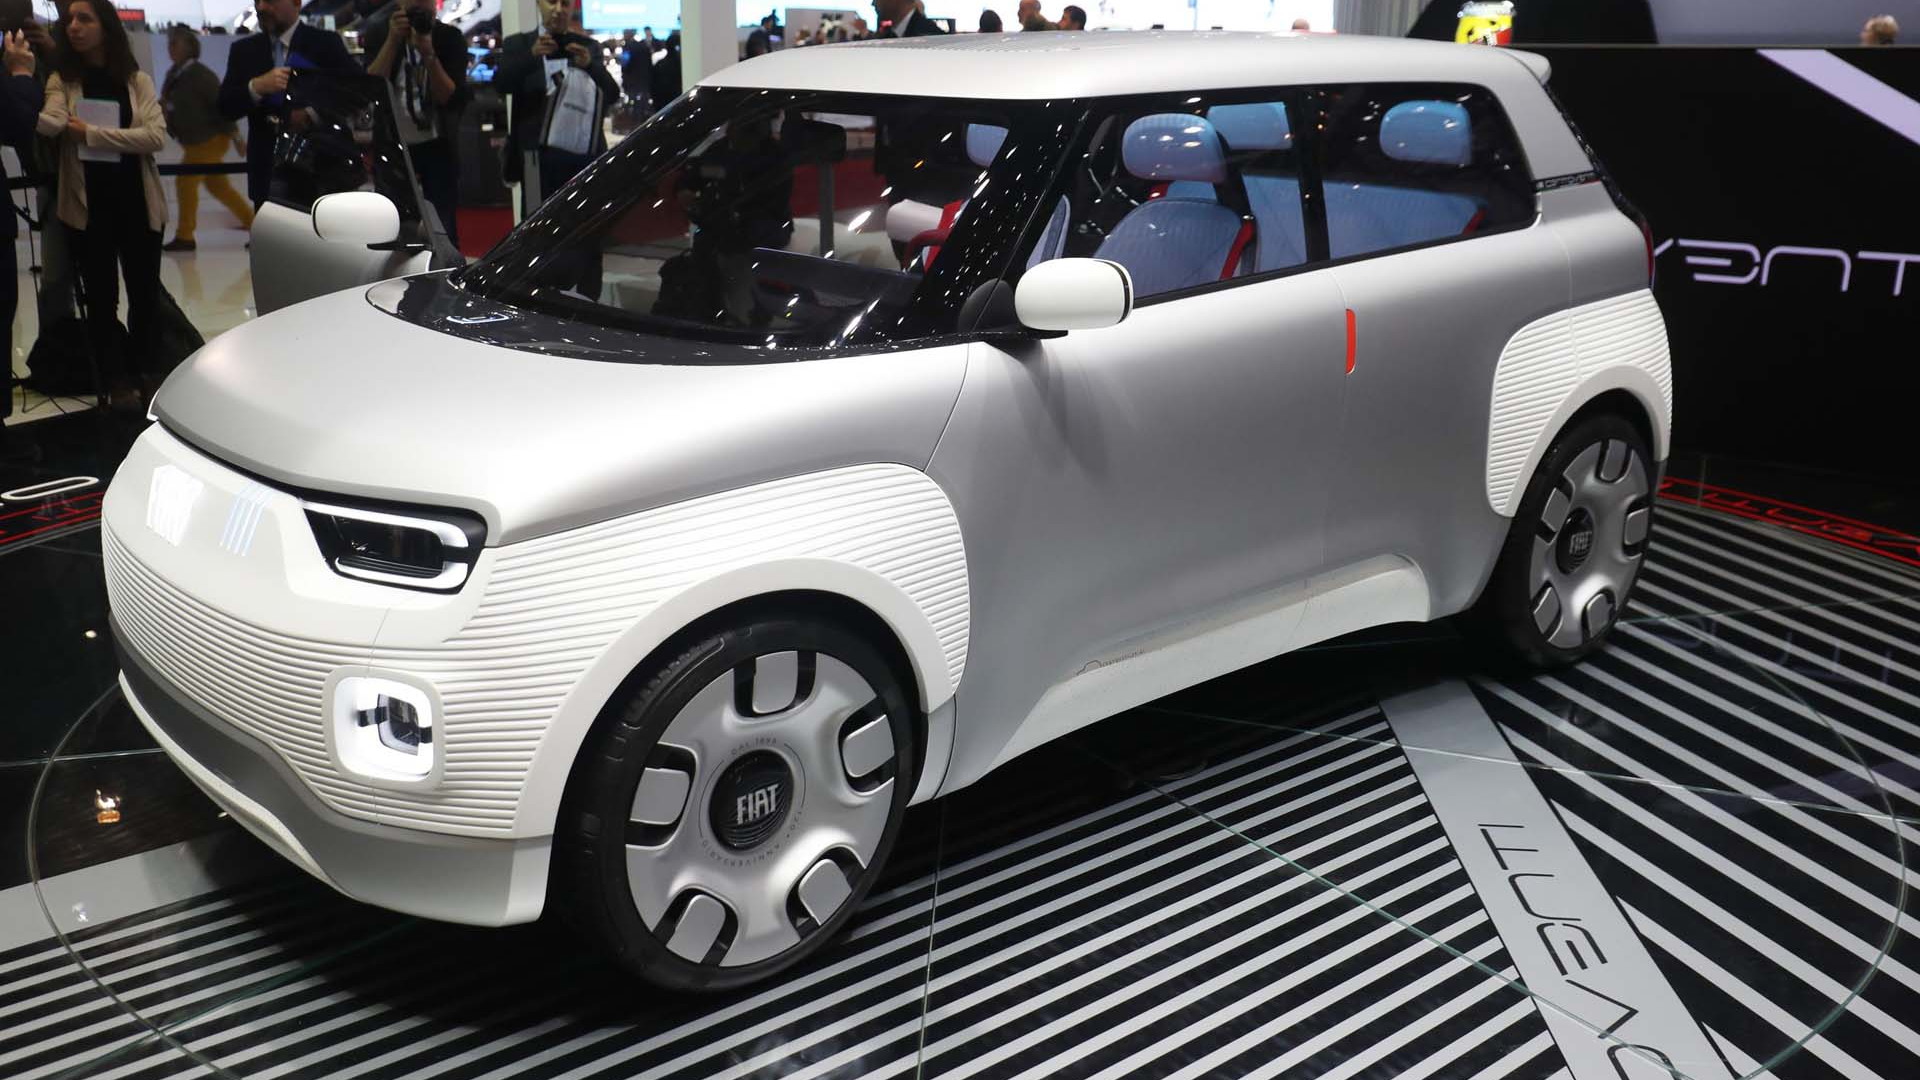 Fiat Concept Centoventi concept